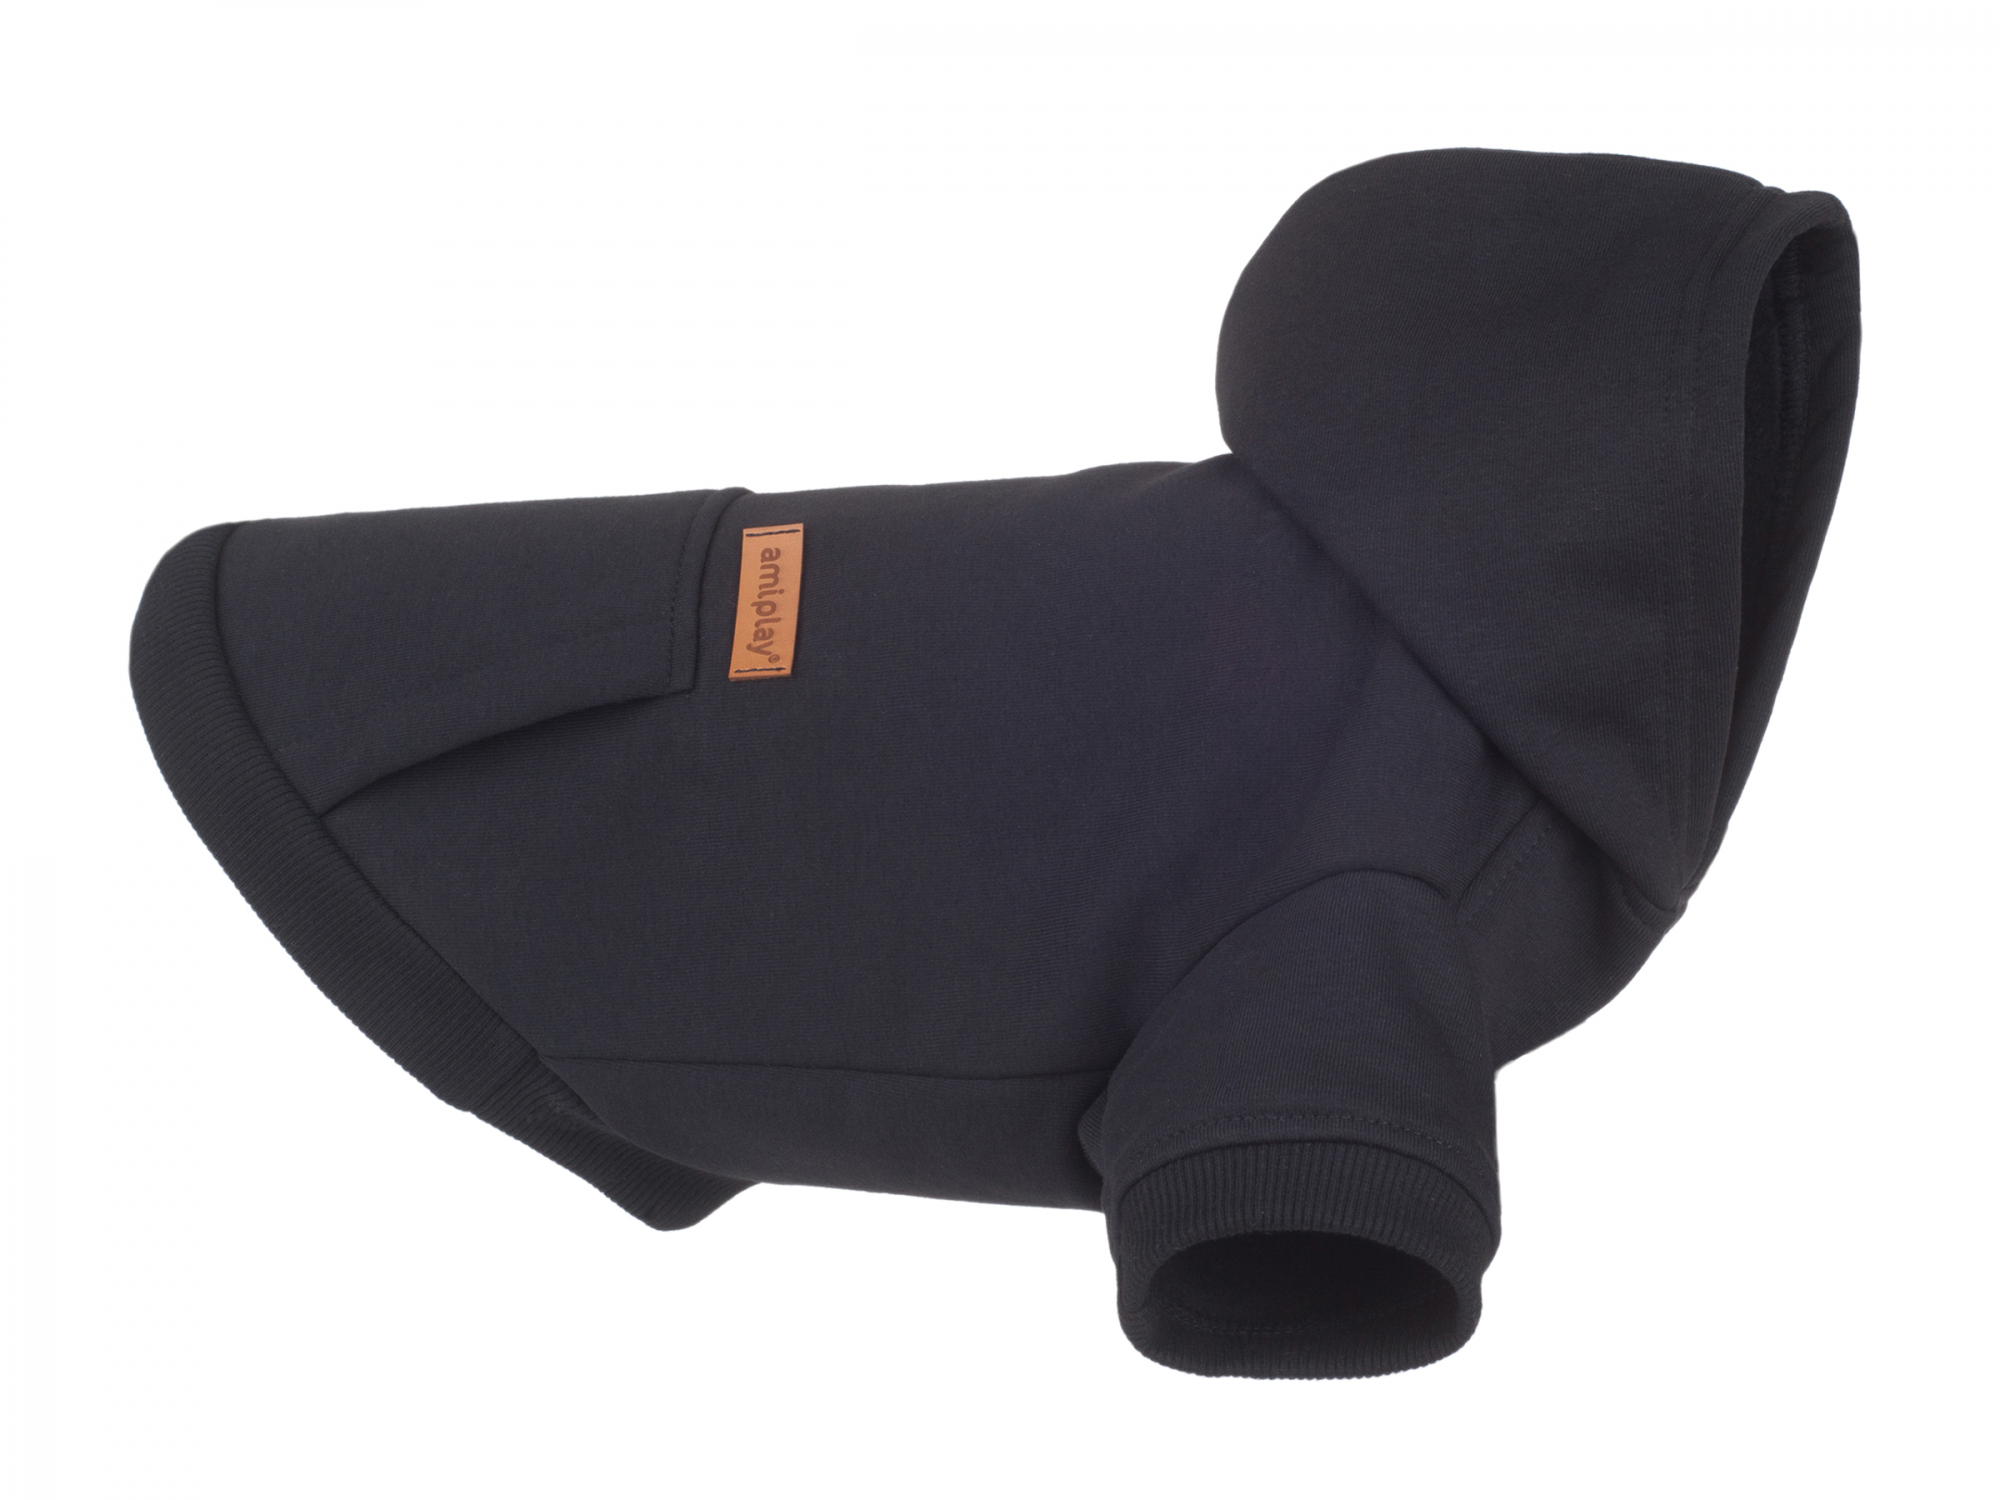 Camisola/Sweat com capucho Texas preta - vários tamanhos disponíveis